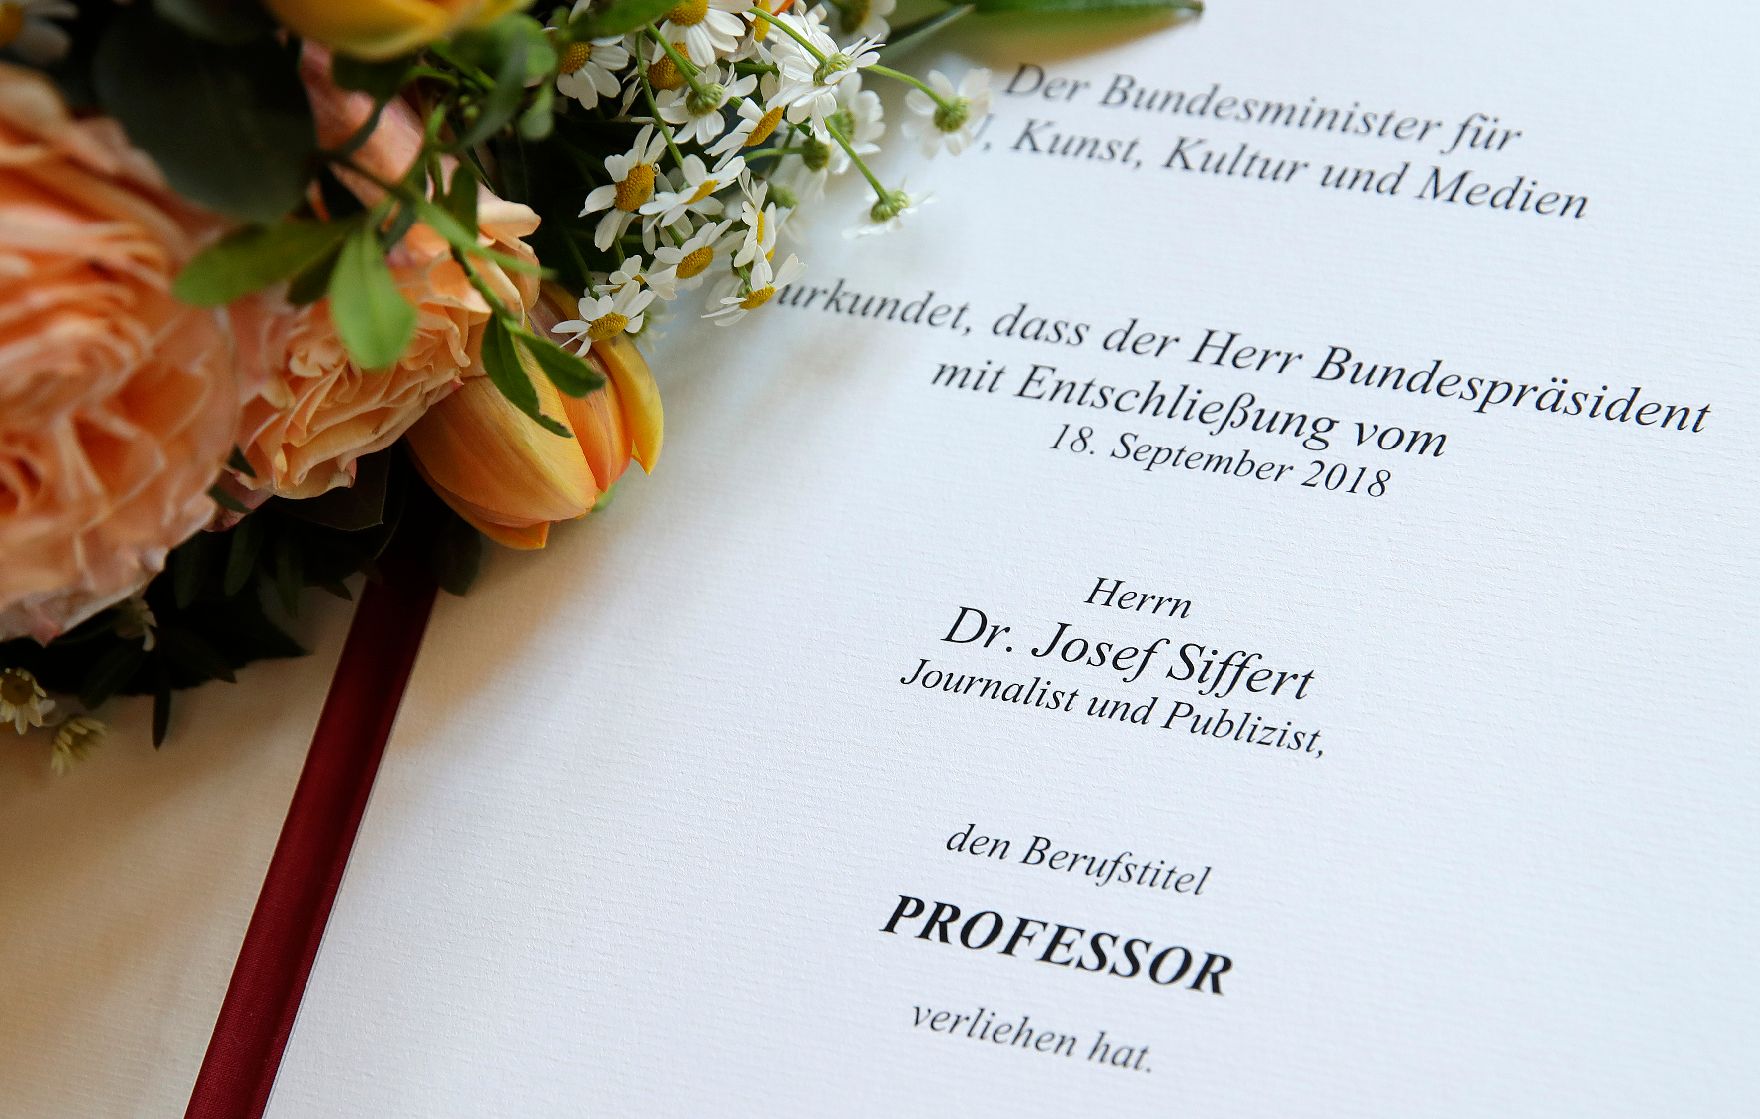 Am 17. April 2019 überreichte Reinhold Hohengartner die Urkunde über die Verleihung des Berufstitels Professor an Josef Siffert.